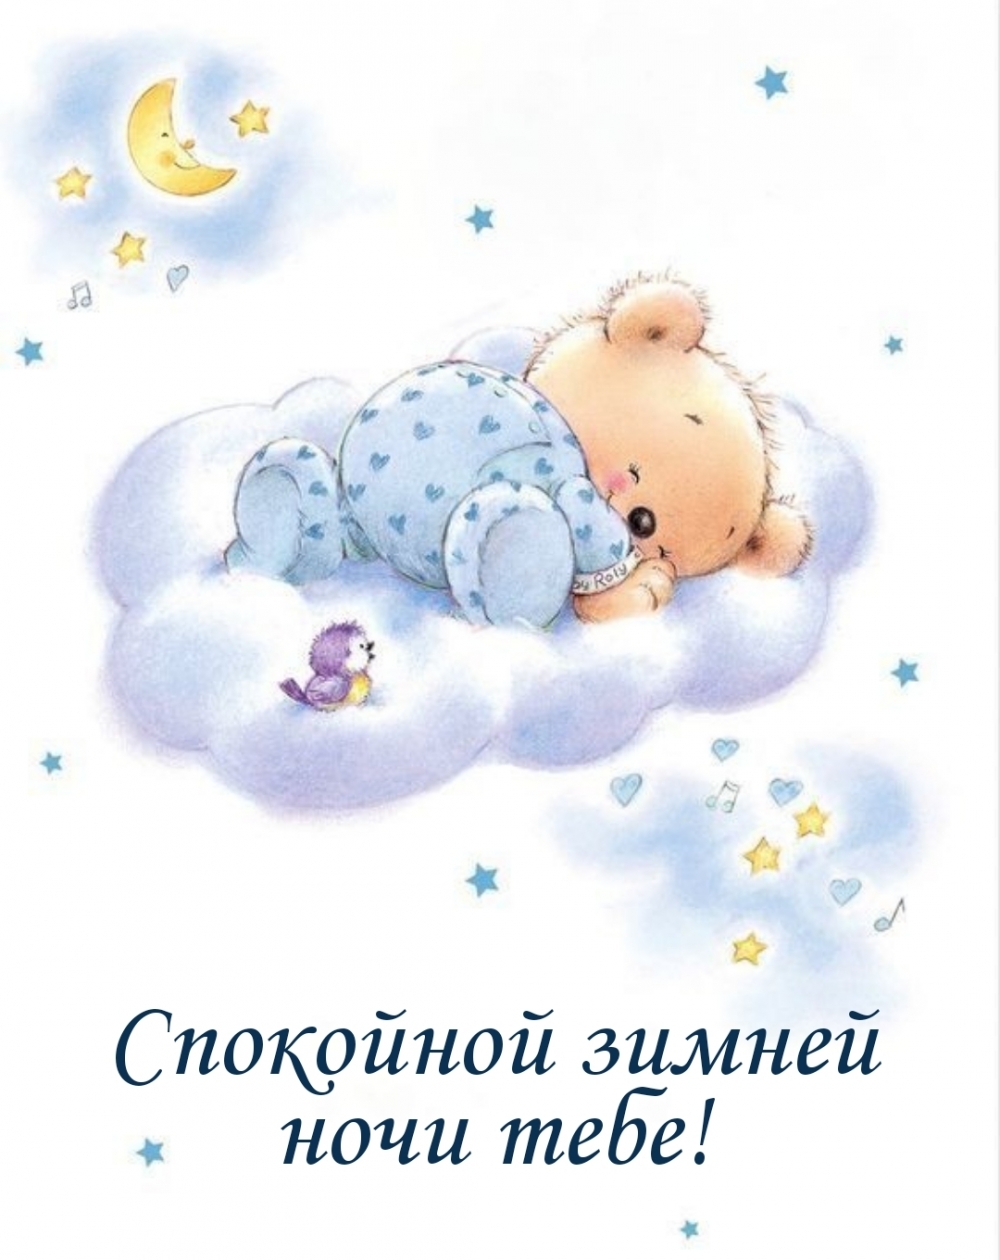 Спокойной ночи сладких снов малыш